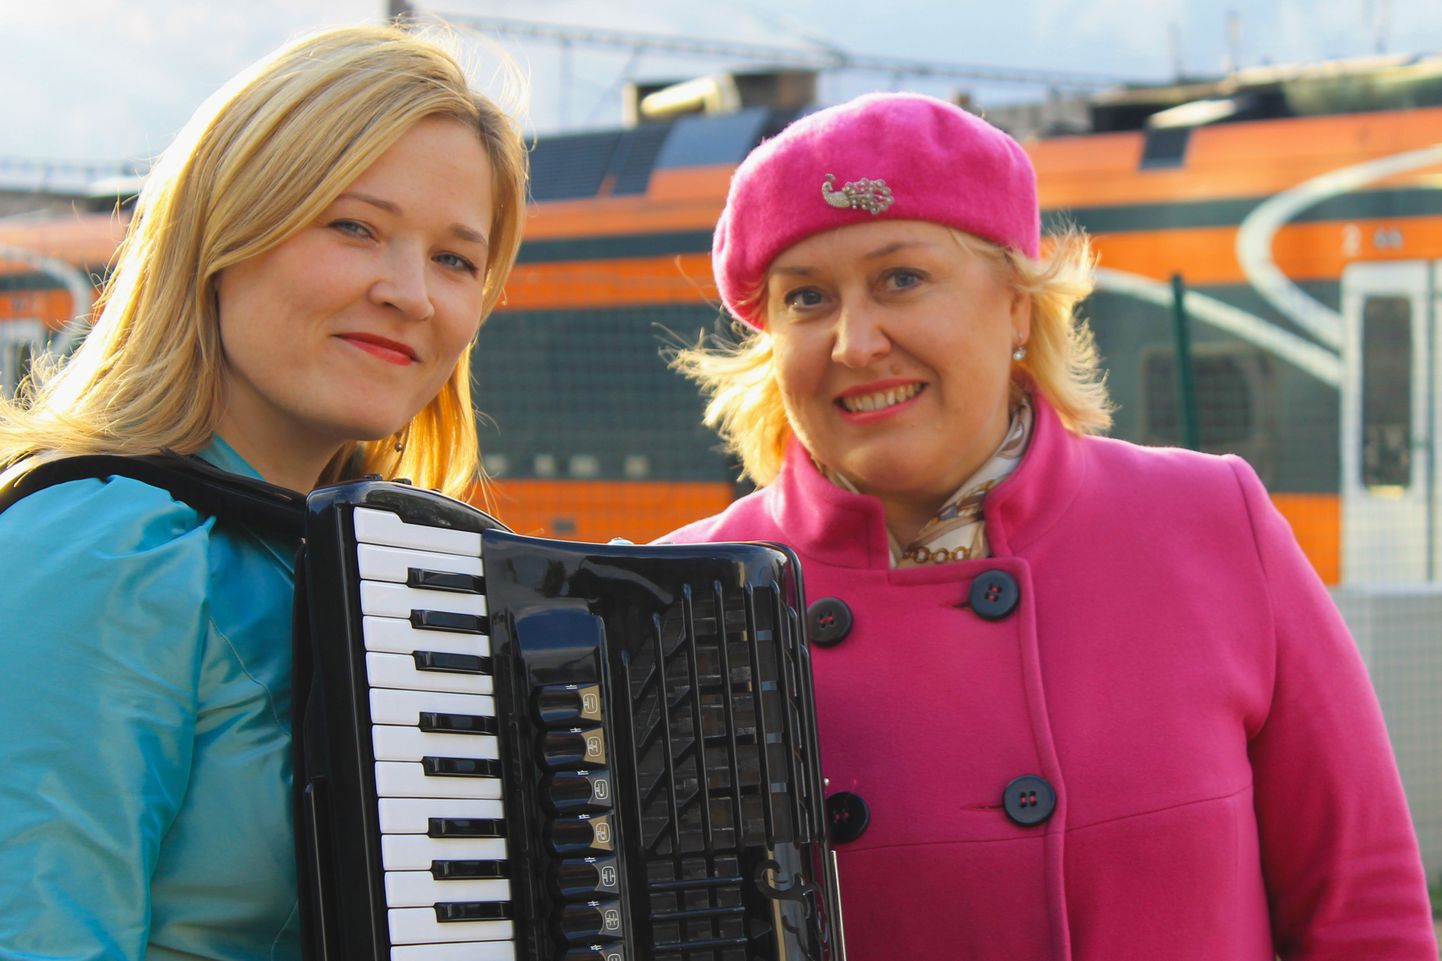 Muusikapäeval annavad rongis kontserdi metsosopran Triin Ella ja akordionist Kristel Laas